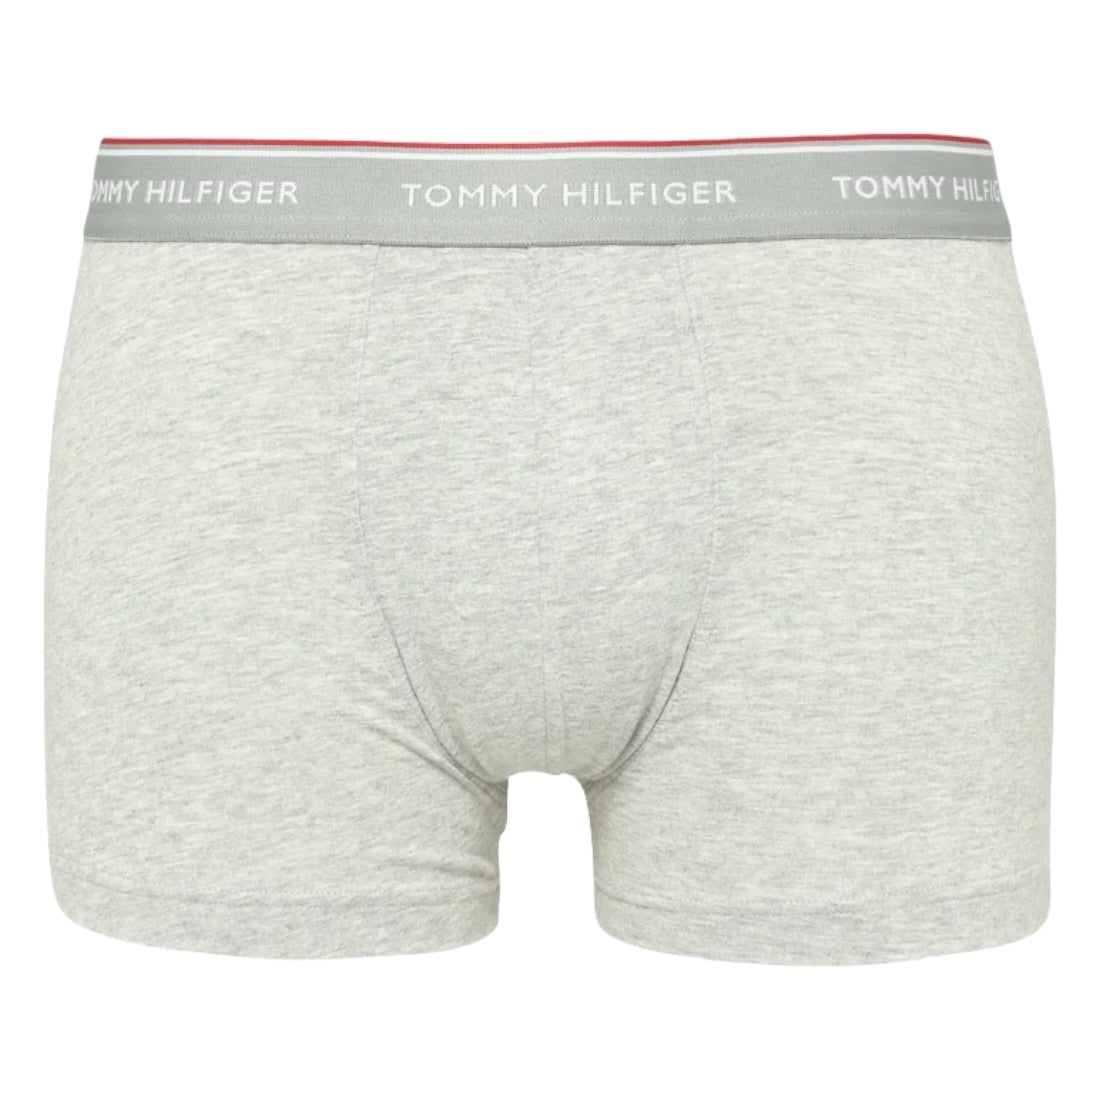 Tommy Hilfiger - Lot de 3 boxers essentiels de qualité supérieure